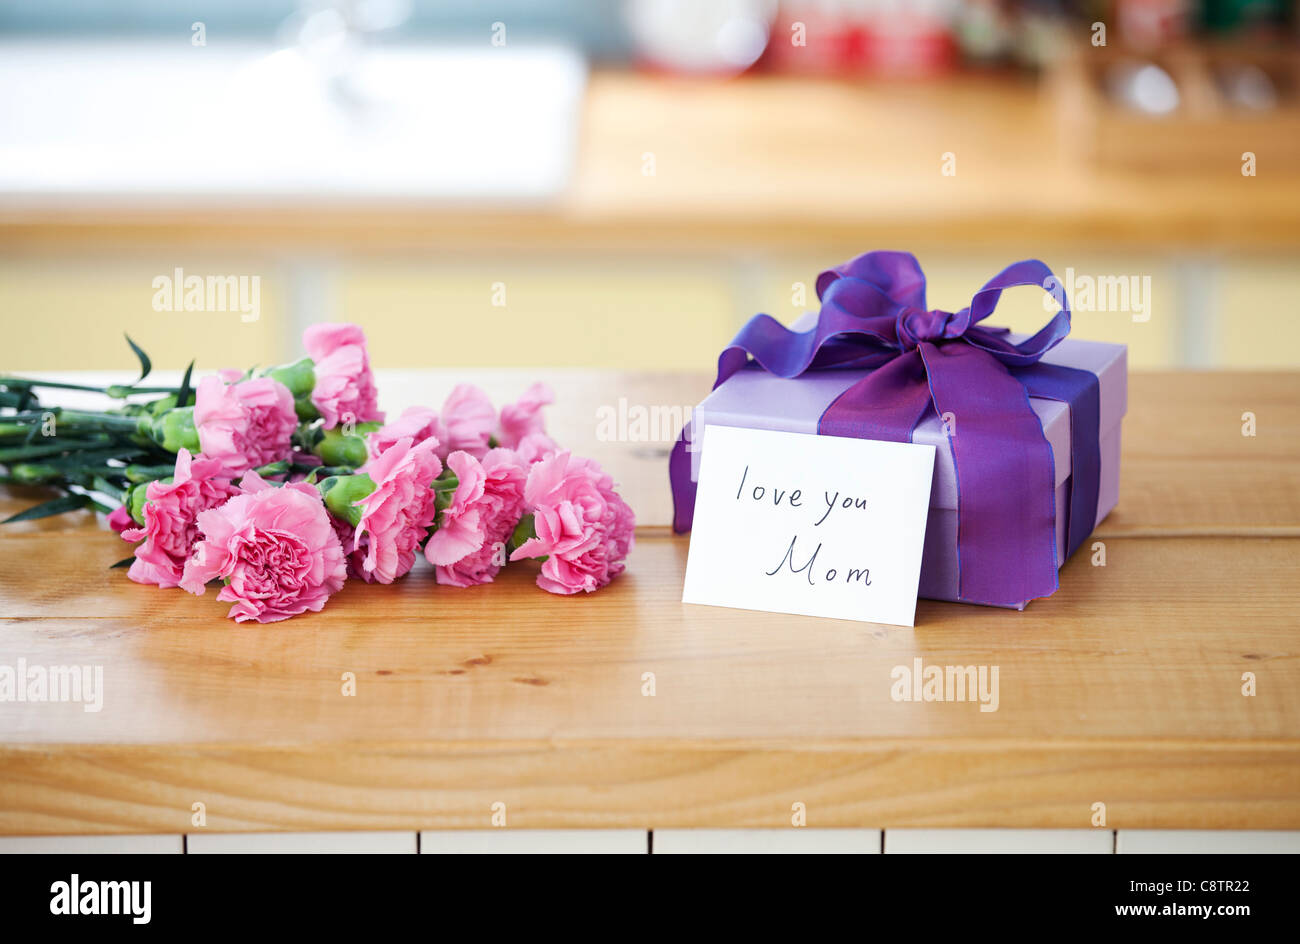 Avvolto confezione regalo e mazzo di fiori sul bancone della cucina Foto Stock